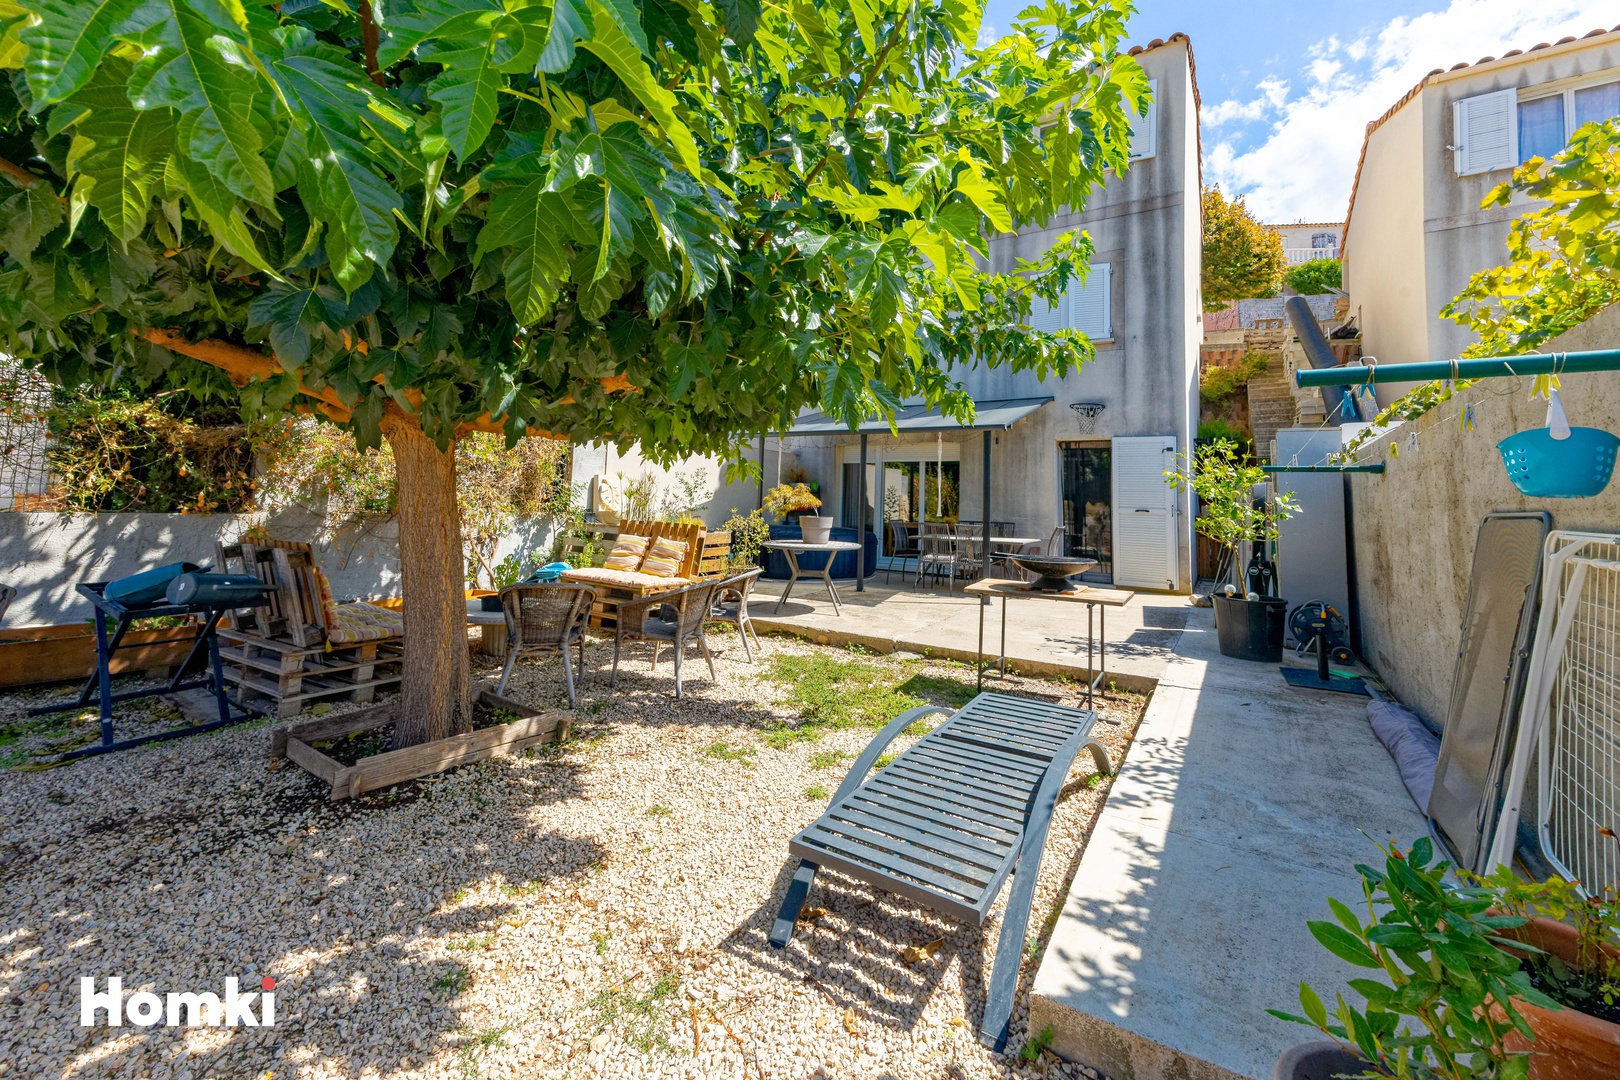 Homki - Vente Maison/villa  de 80.0 m² à Marseille 13015